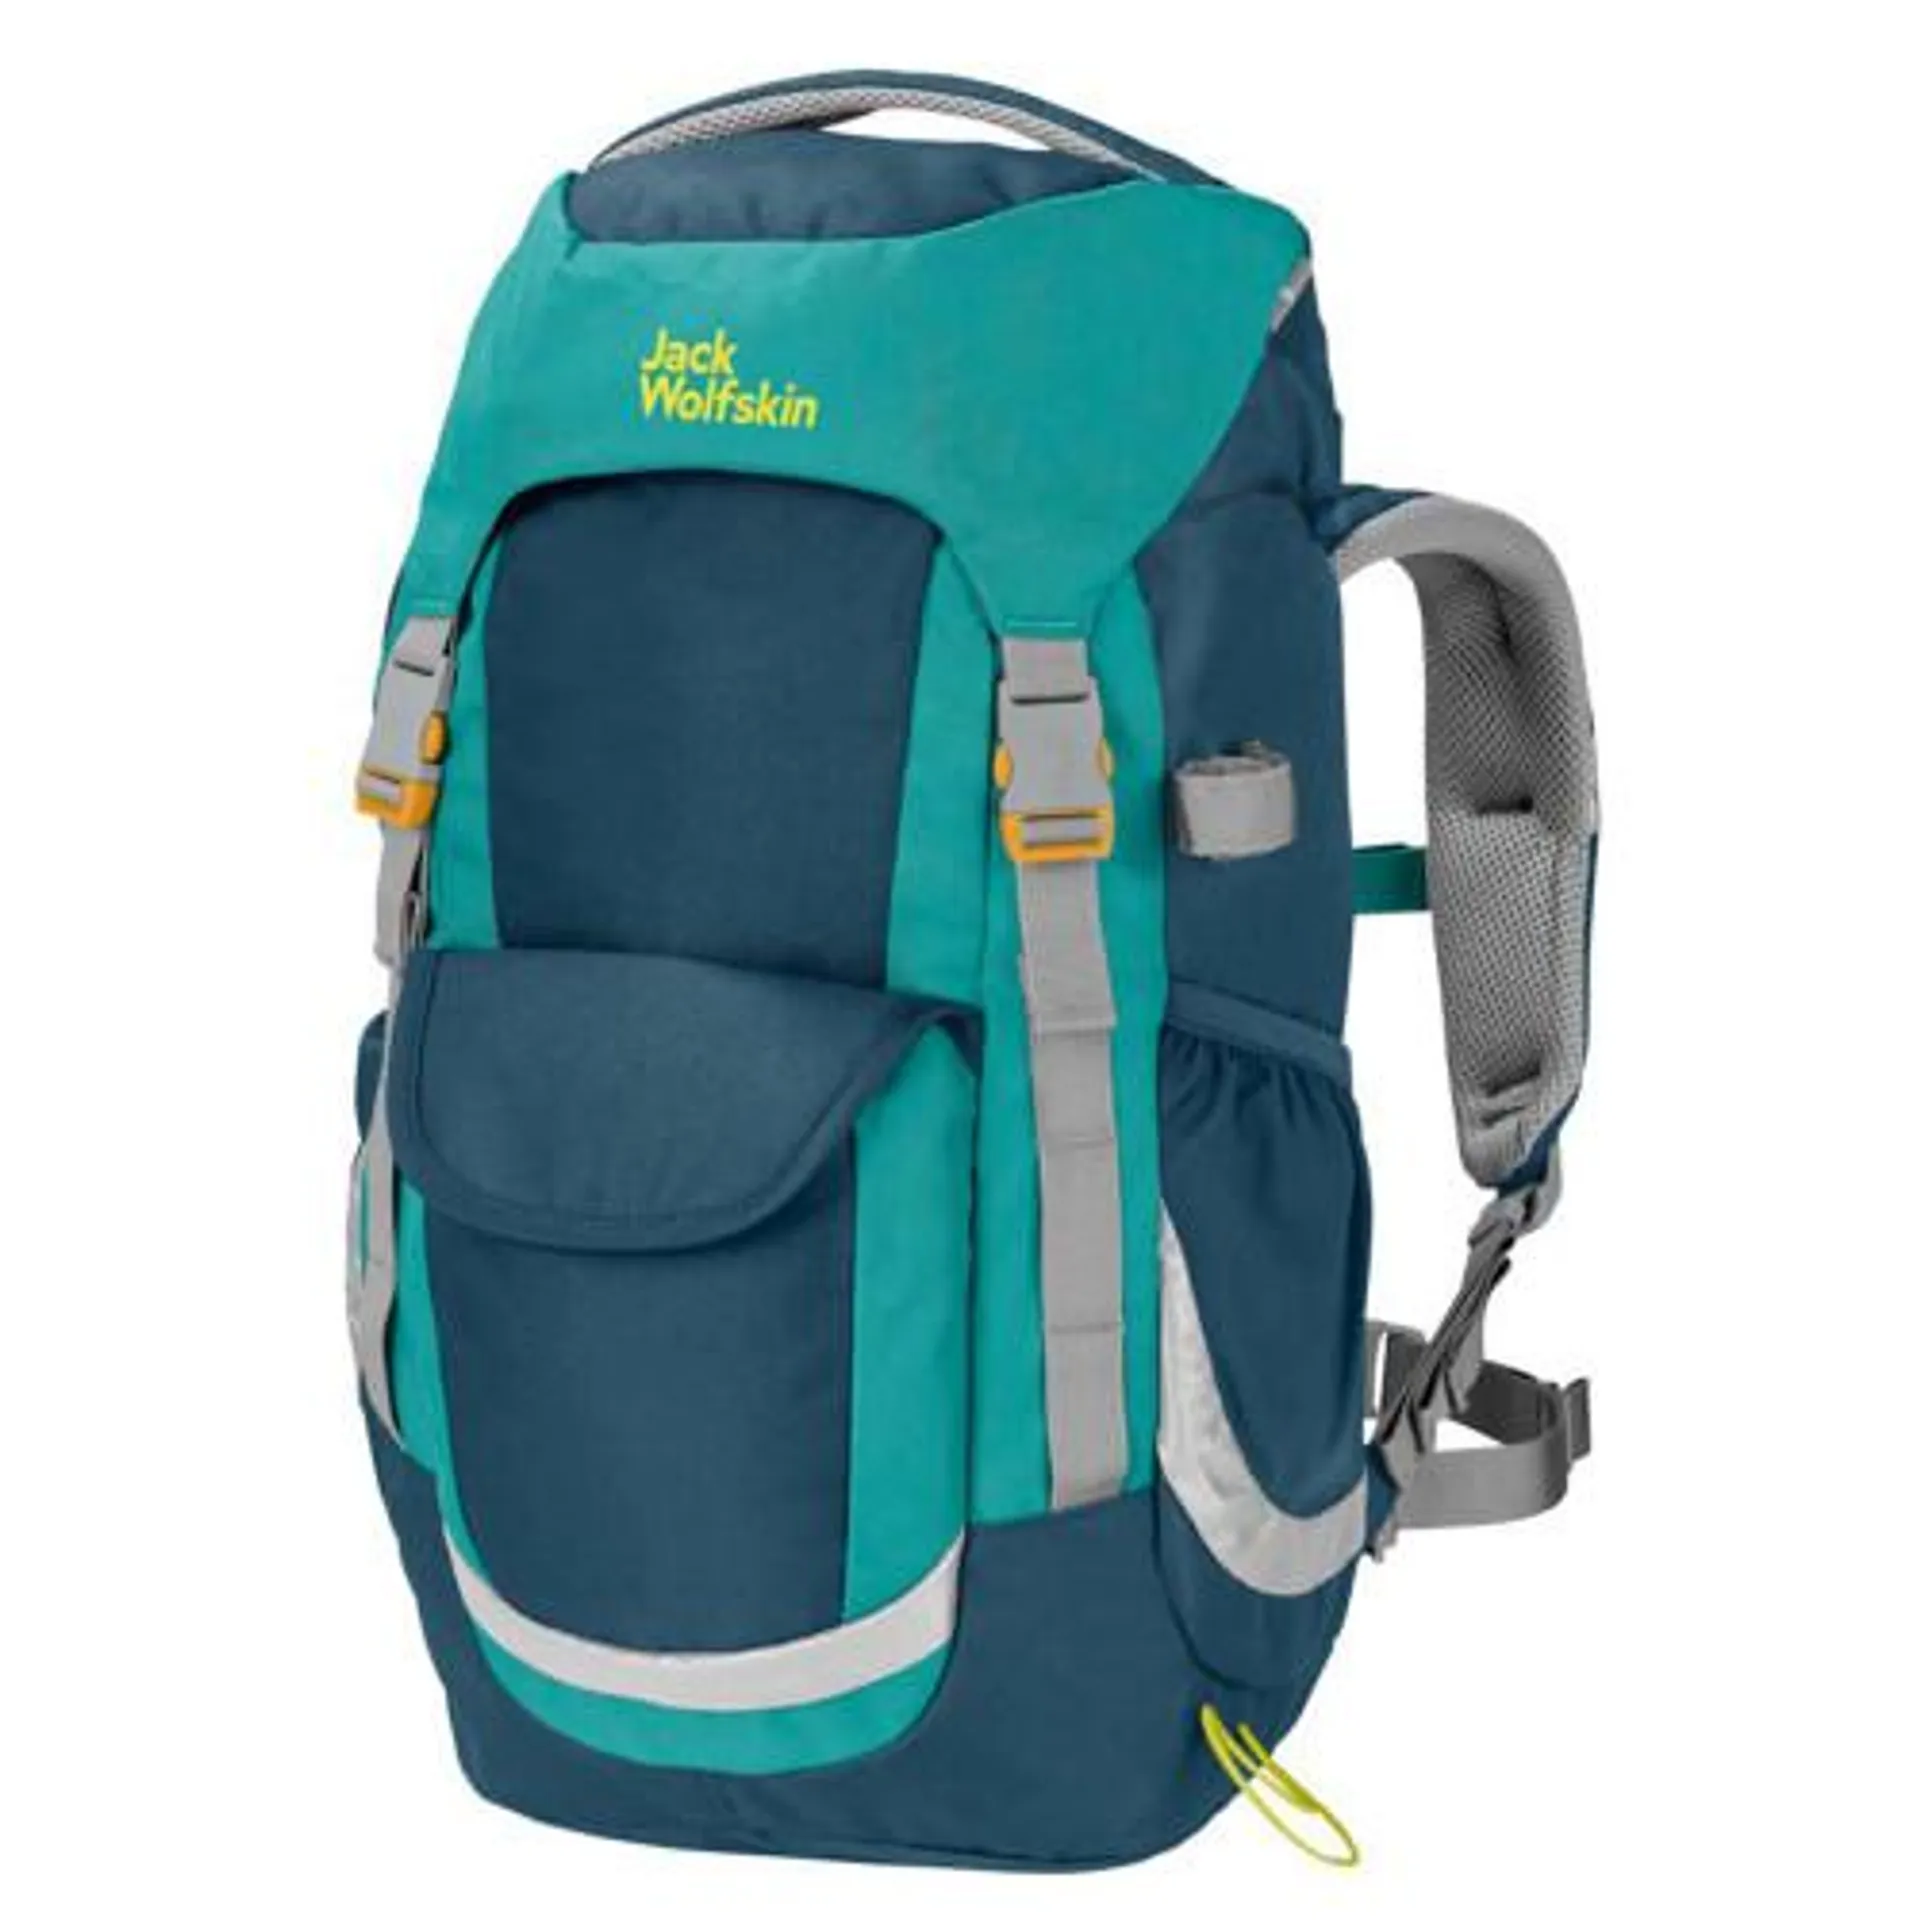 Jack Wolfskin Explorer 20 Backpack